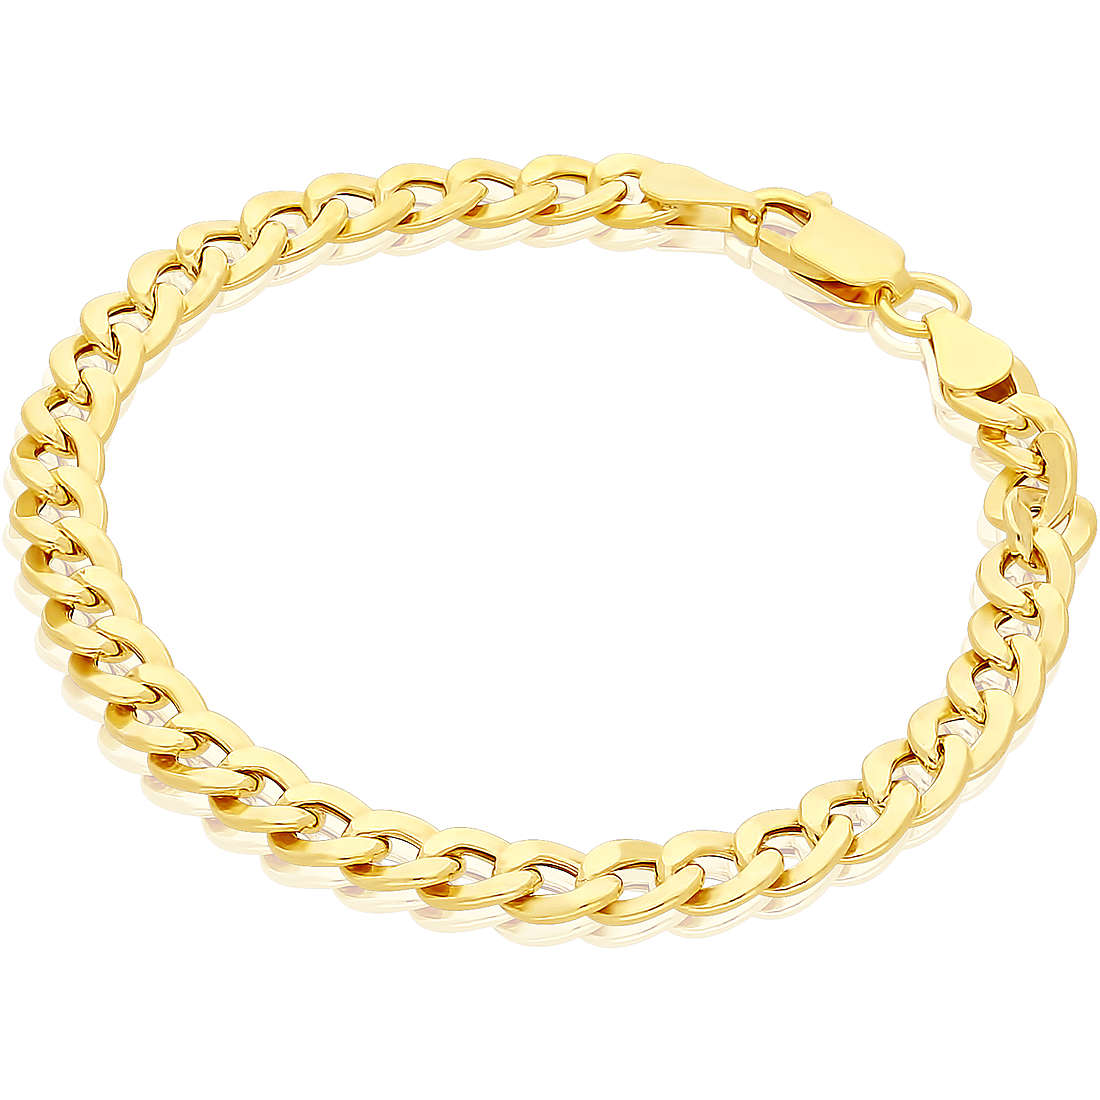 bracelet woman Chain 925 Silver jewel GioiaPura GYBARW0943-G